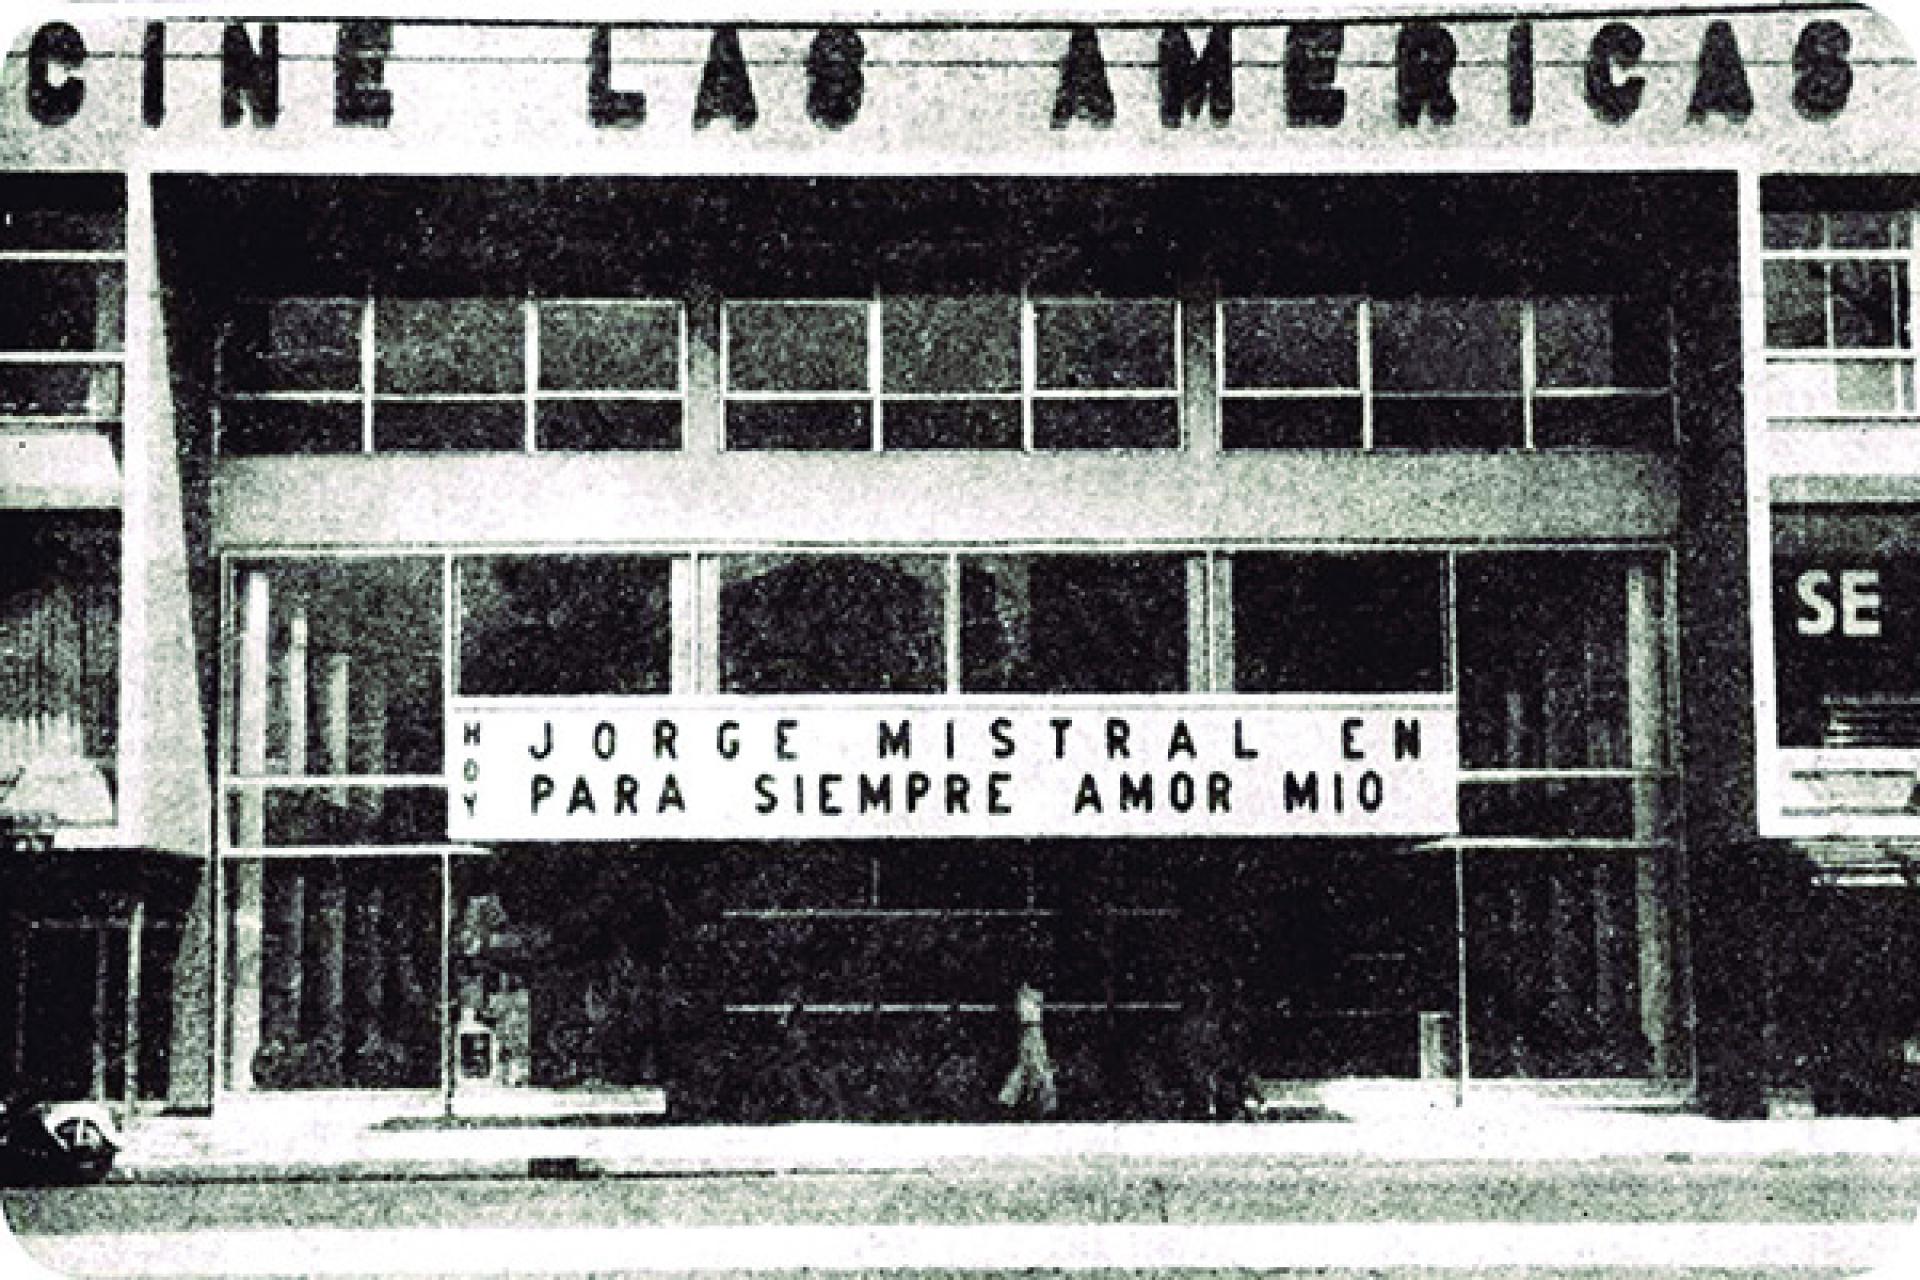 Cine Las Americas. José Villagrán García. Movie Theater lost in the earthquake of 1957. | Photo via Colección Carlos Villasana, Más por Más